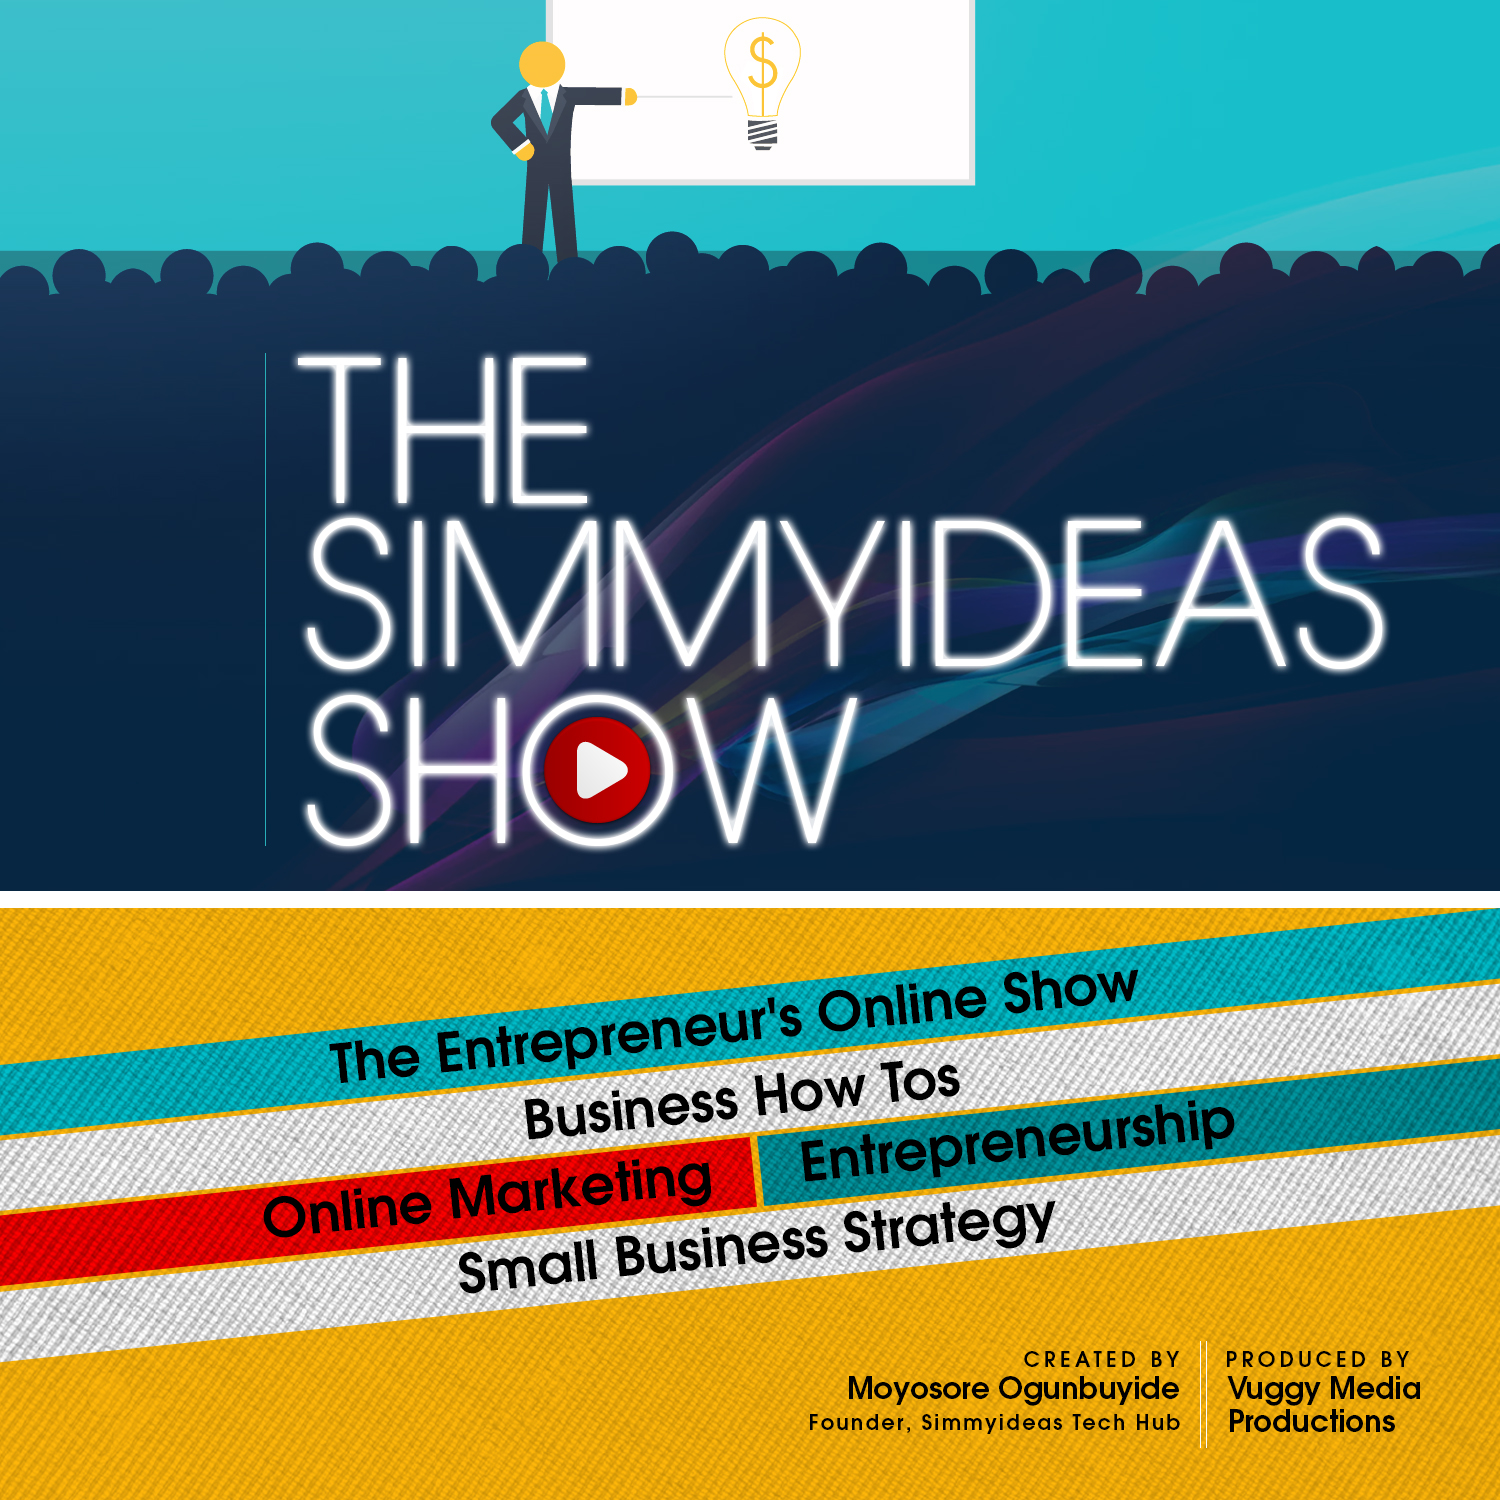 THE SIMMYIDEAS SHOW